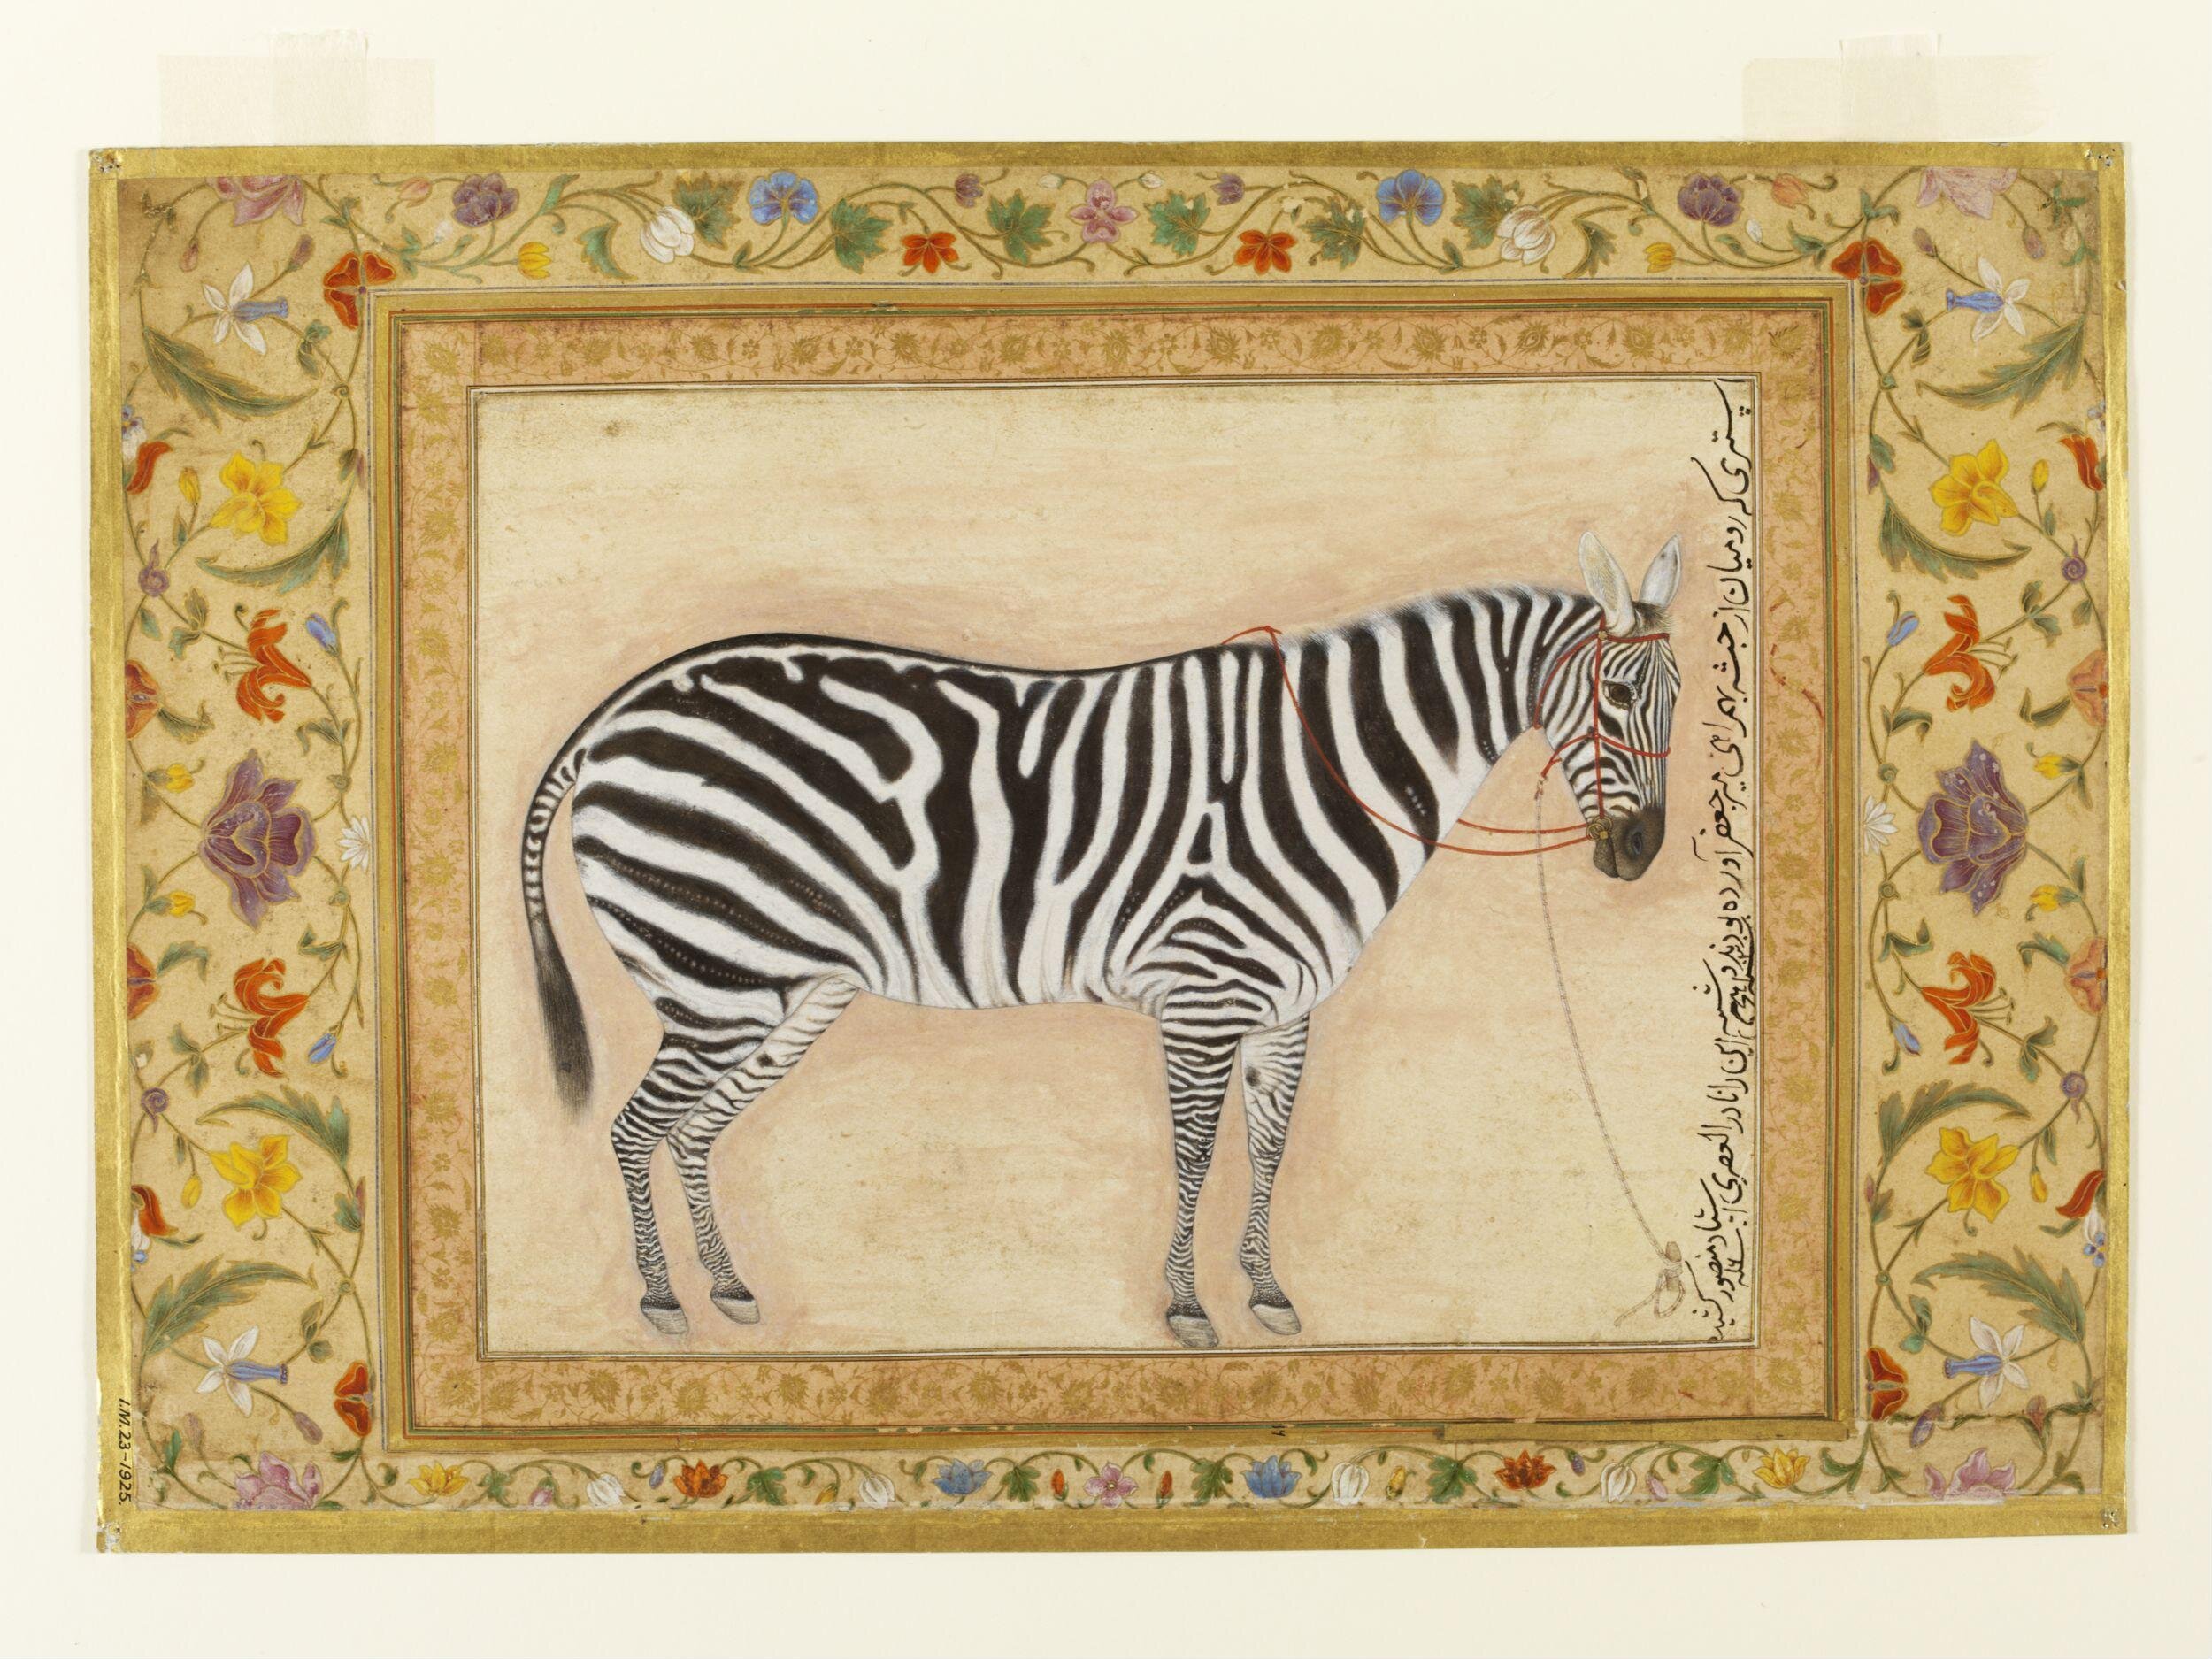 Zebra by Ustad Mansur - 1621 - 38.7 x 24cm 